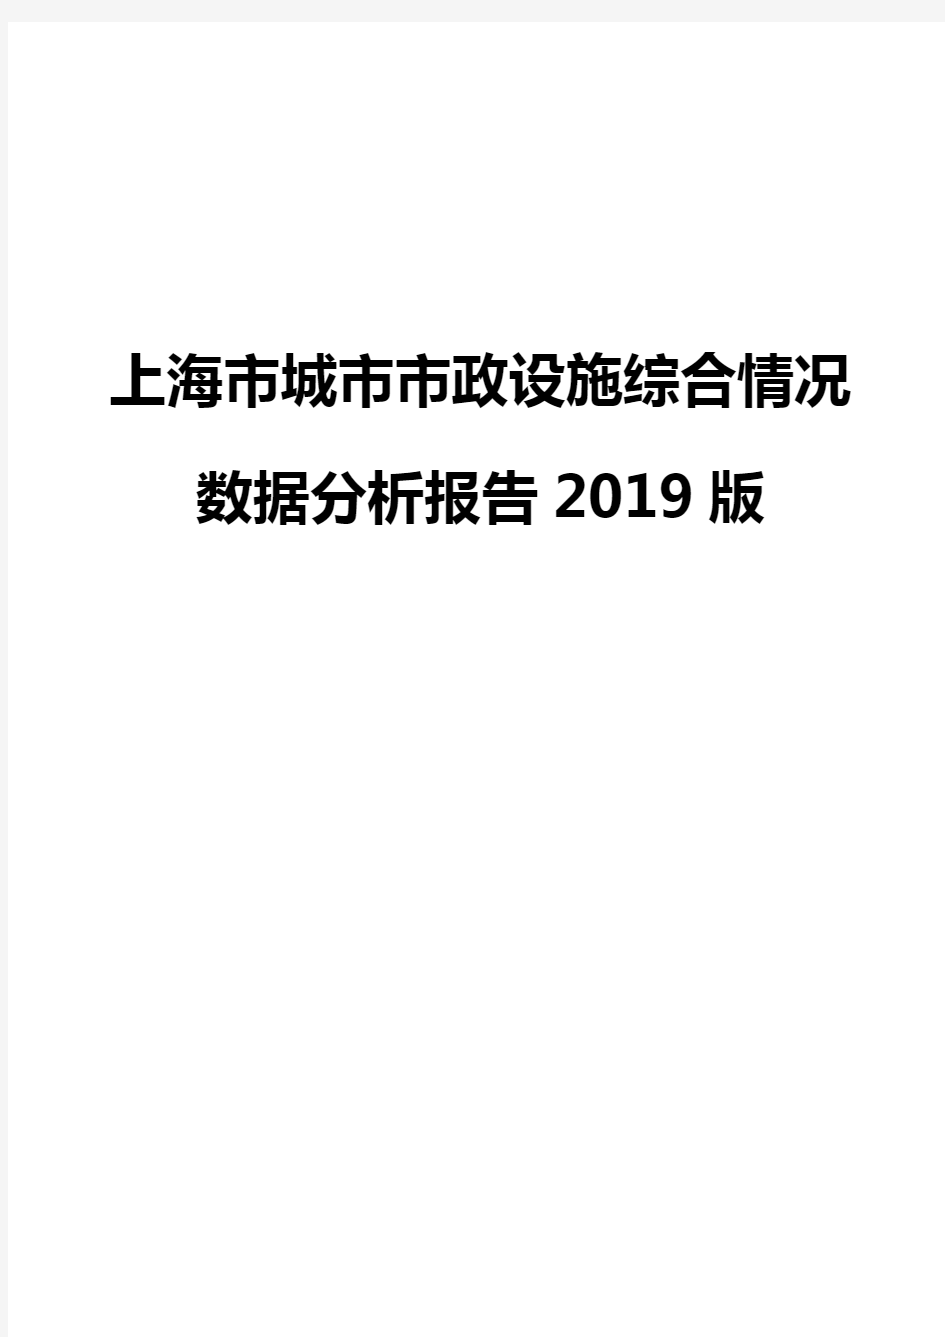 上海市城市市政设施综合情况数据分析报告2019版